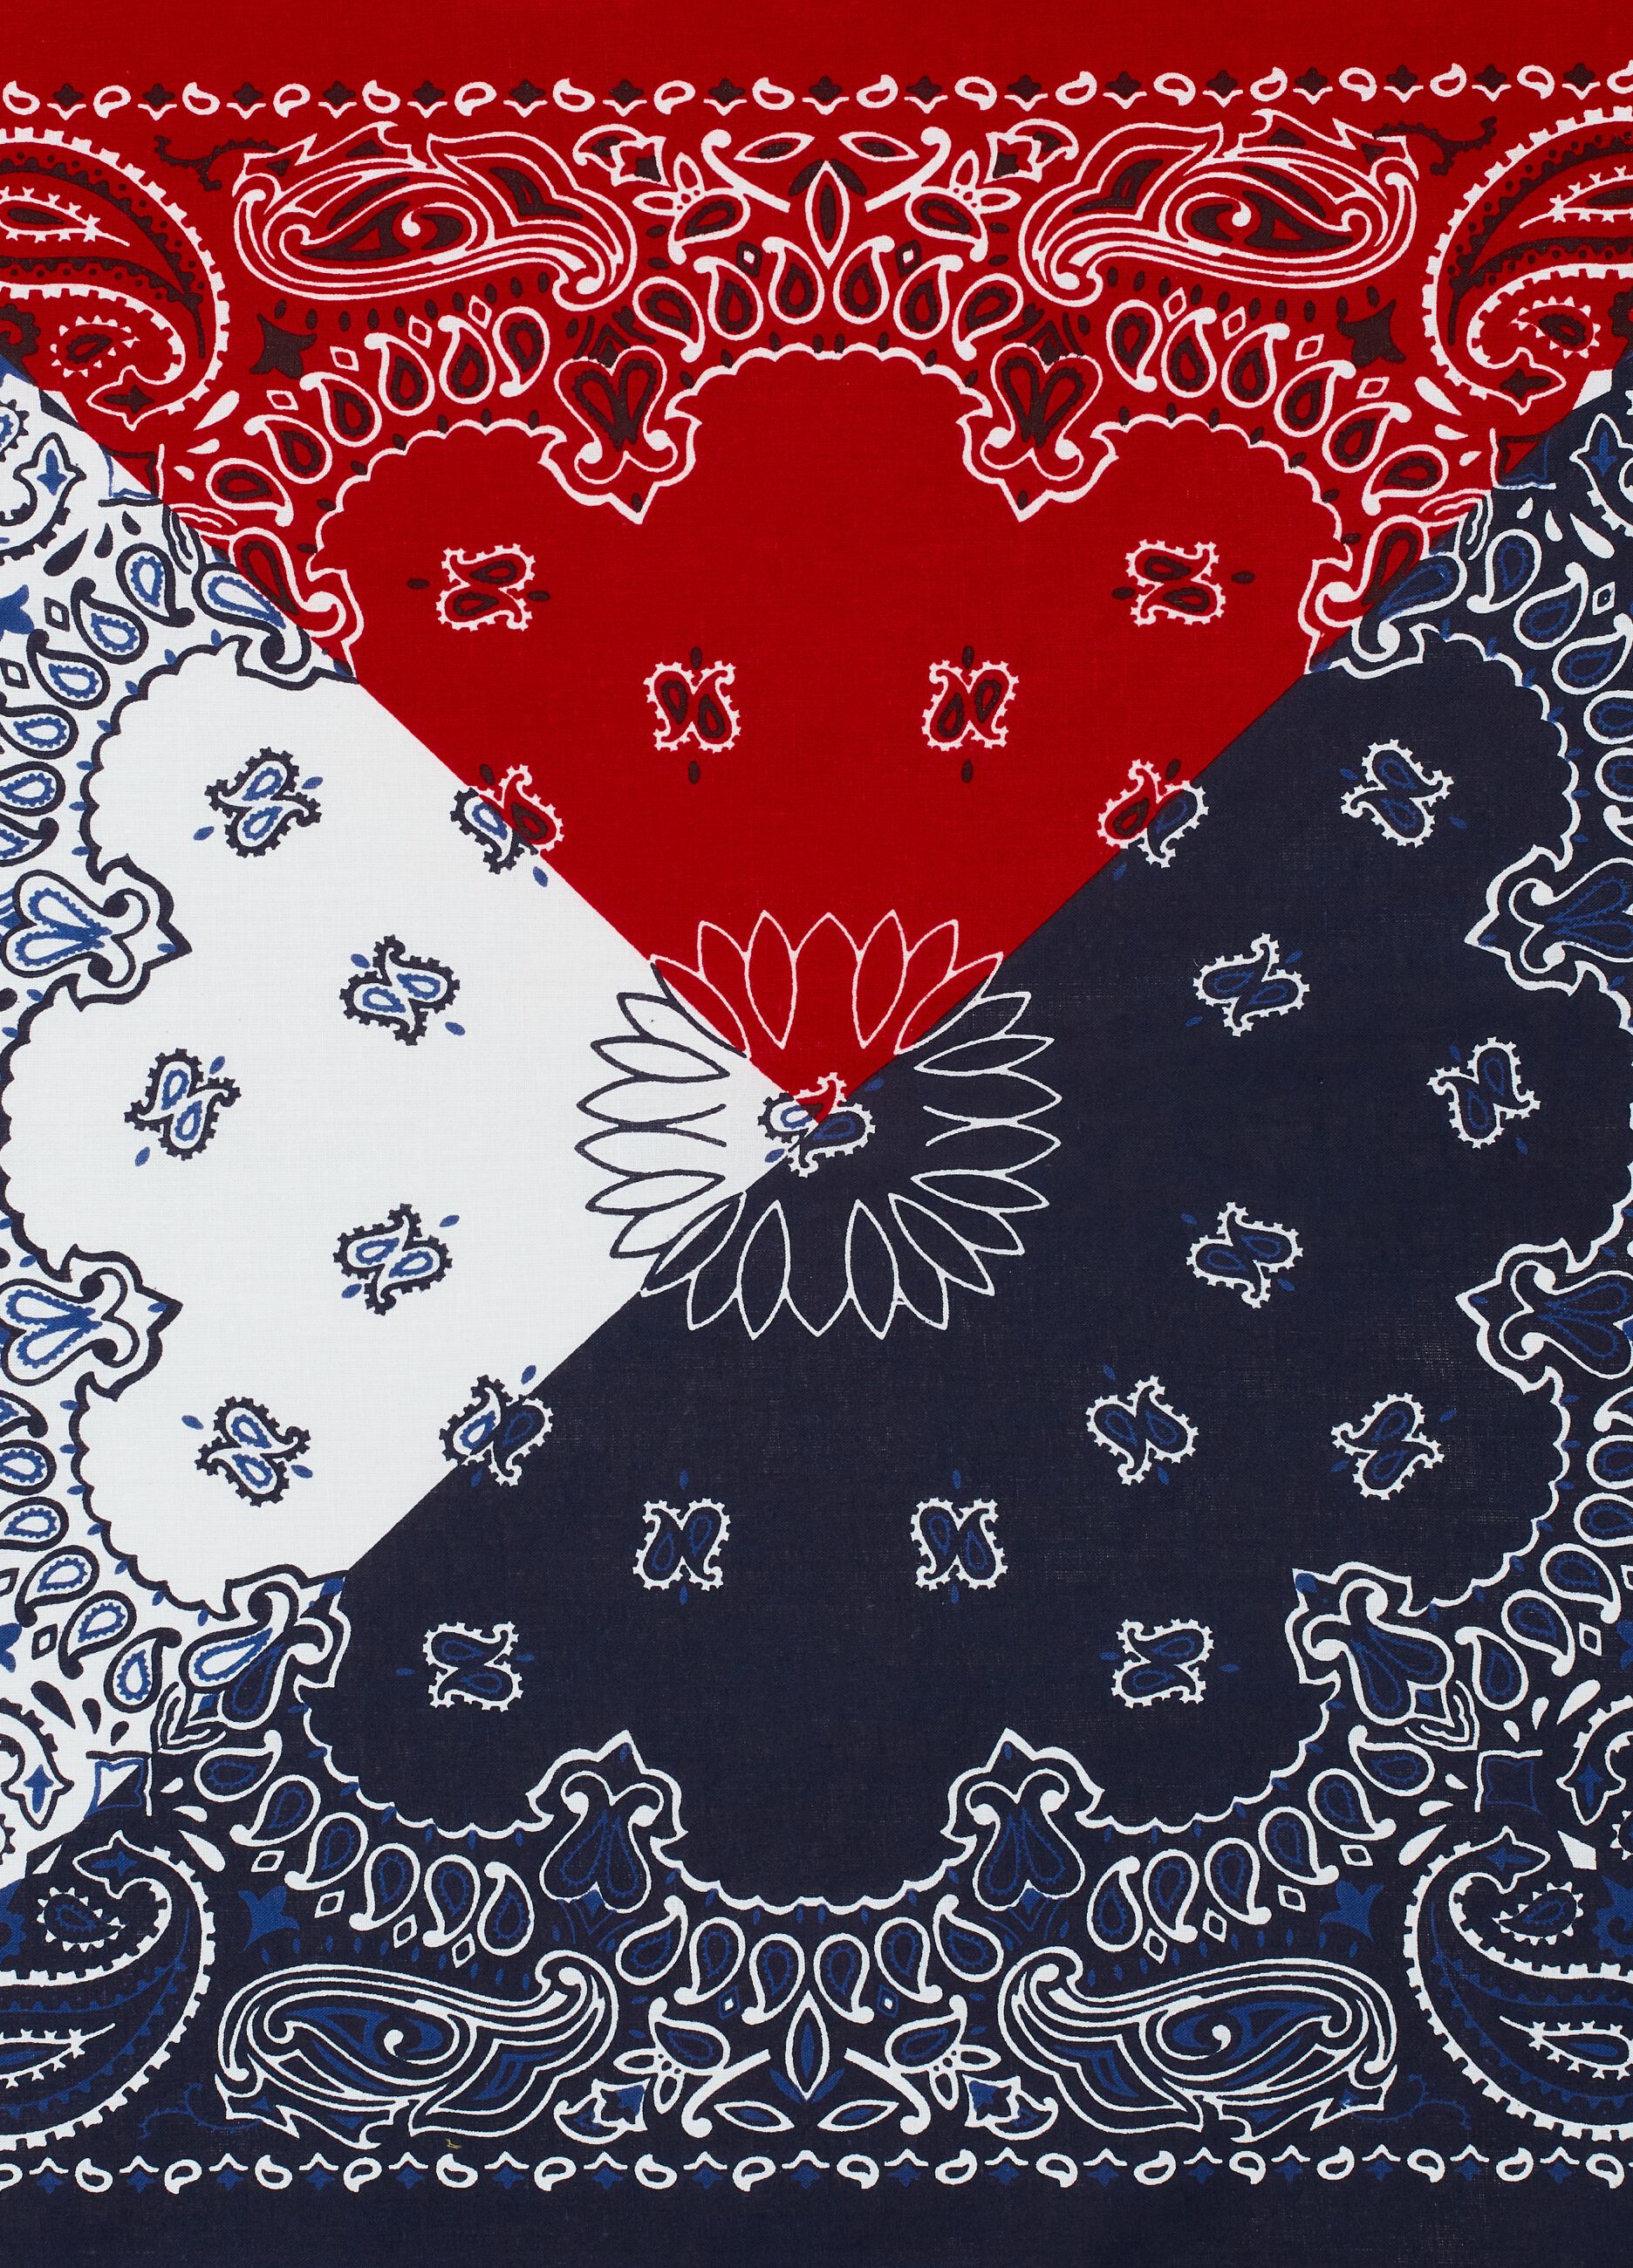 Cotton bandana with paisley pattern